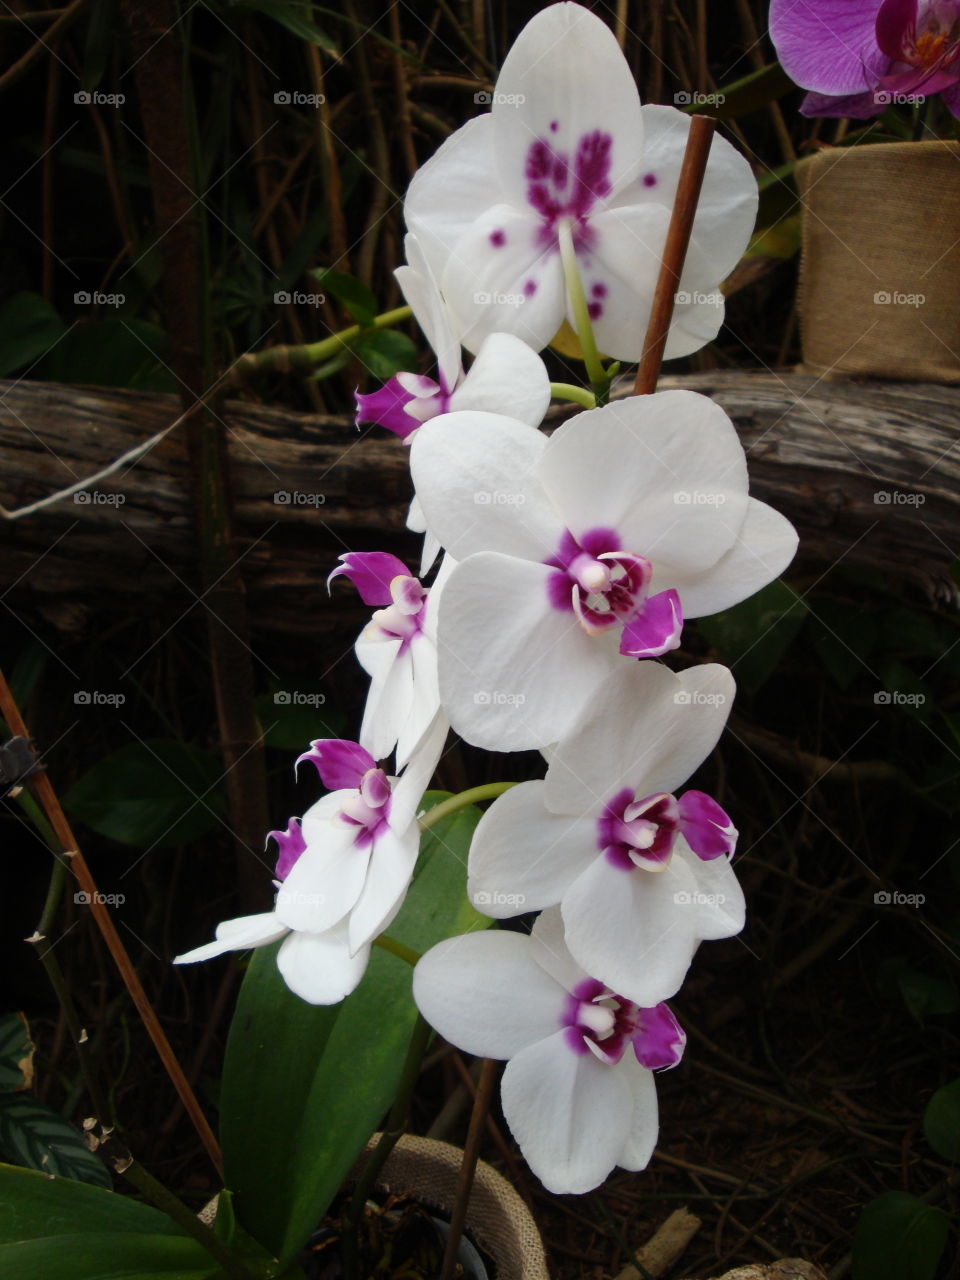 Tenerife orchids